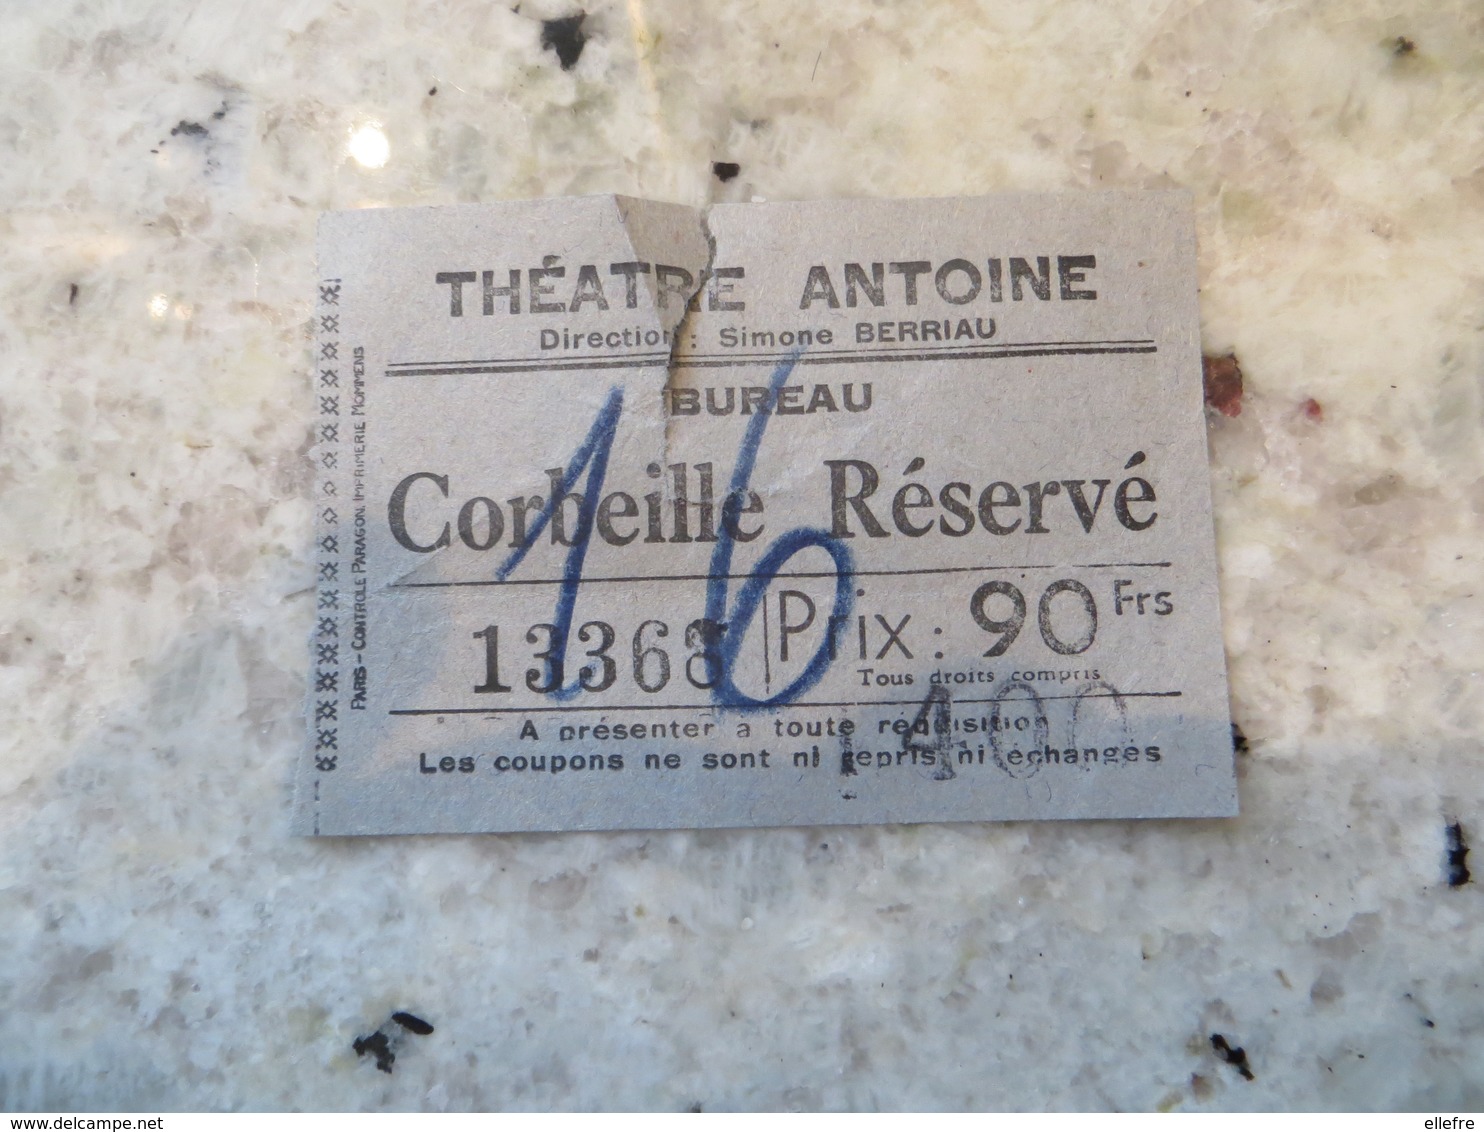 Billet Théâtre Antoine Bureau Corbeille Réservé Ancien à Dater - Tickets - Vouchers